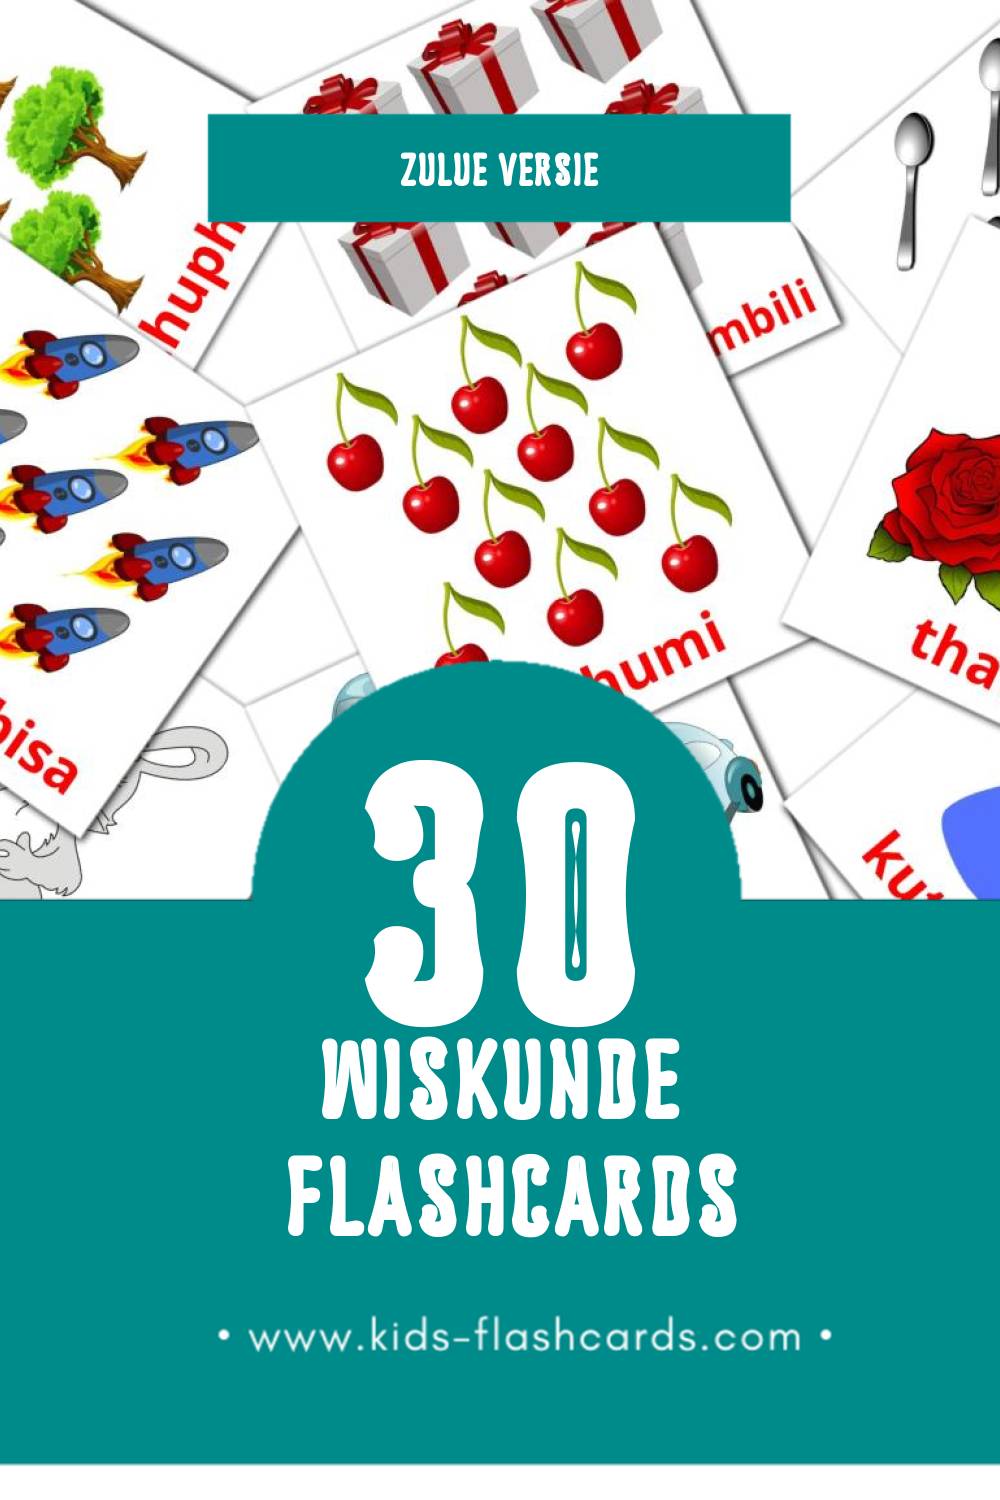 Visuele Izibalo Flashcards voor Kleuters (30 kaarten in het Zulu)